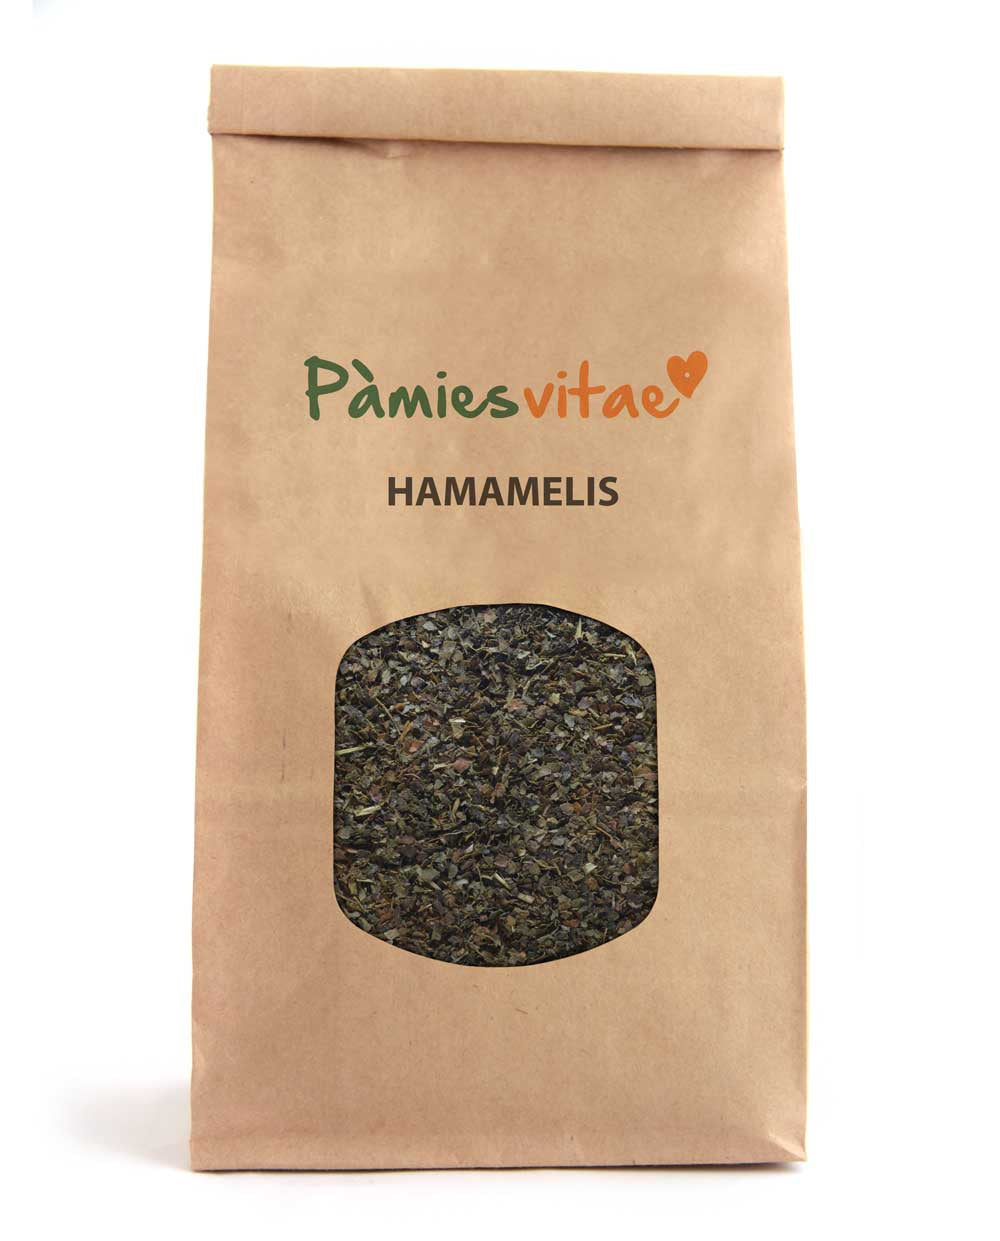 HAMAMELIS - Hamamelis virginiana